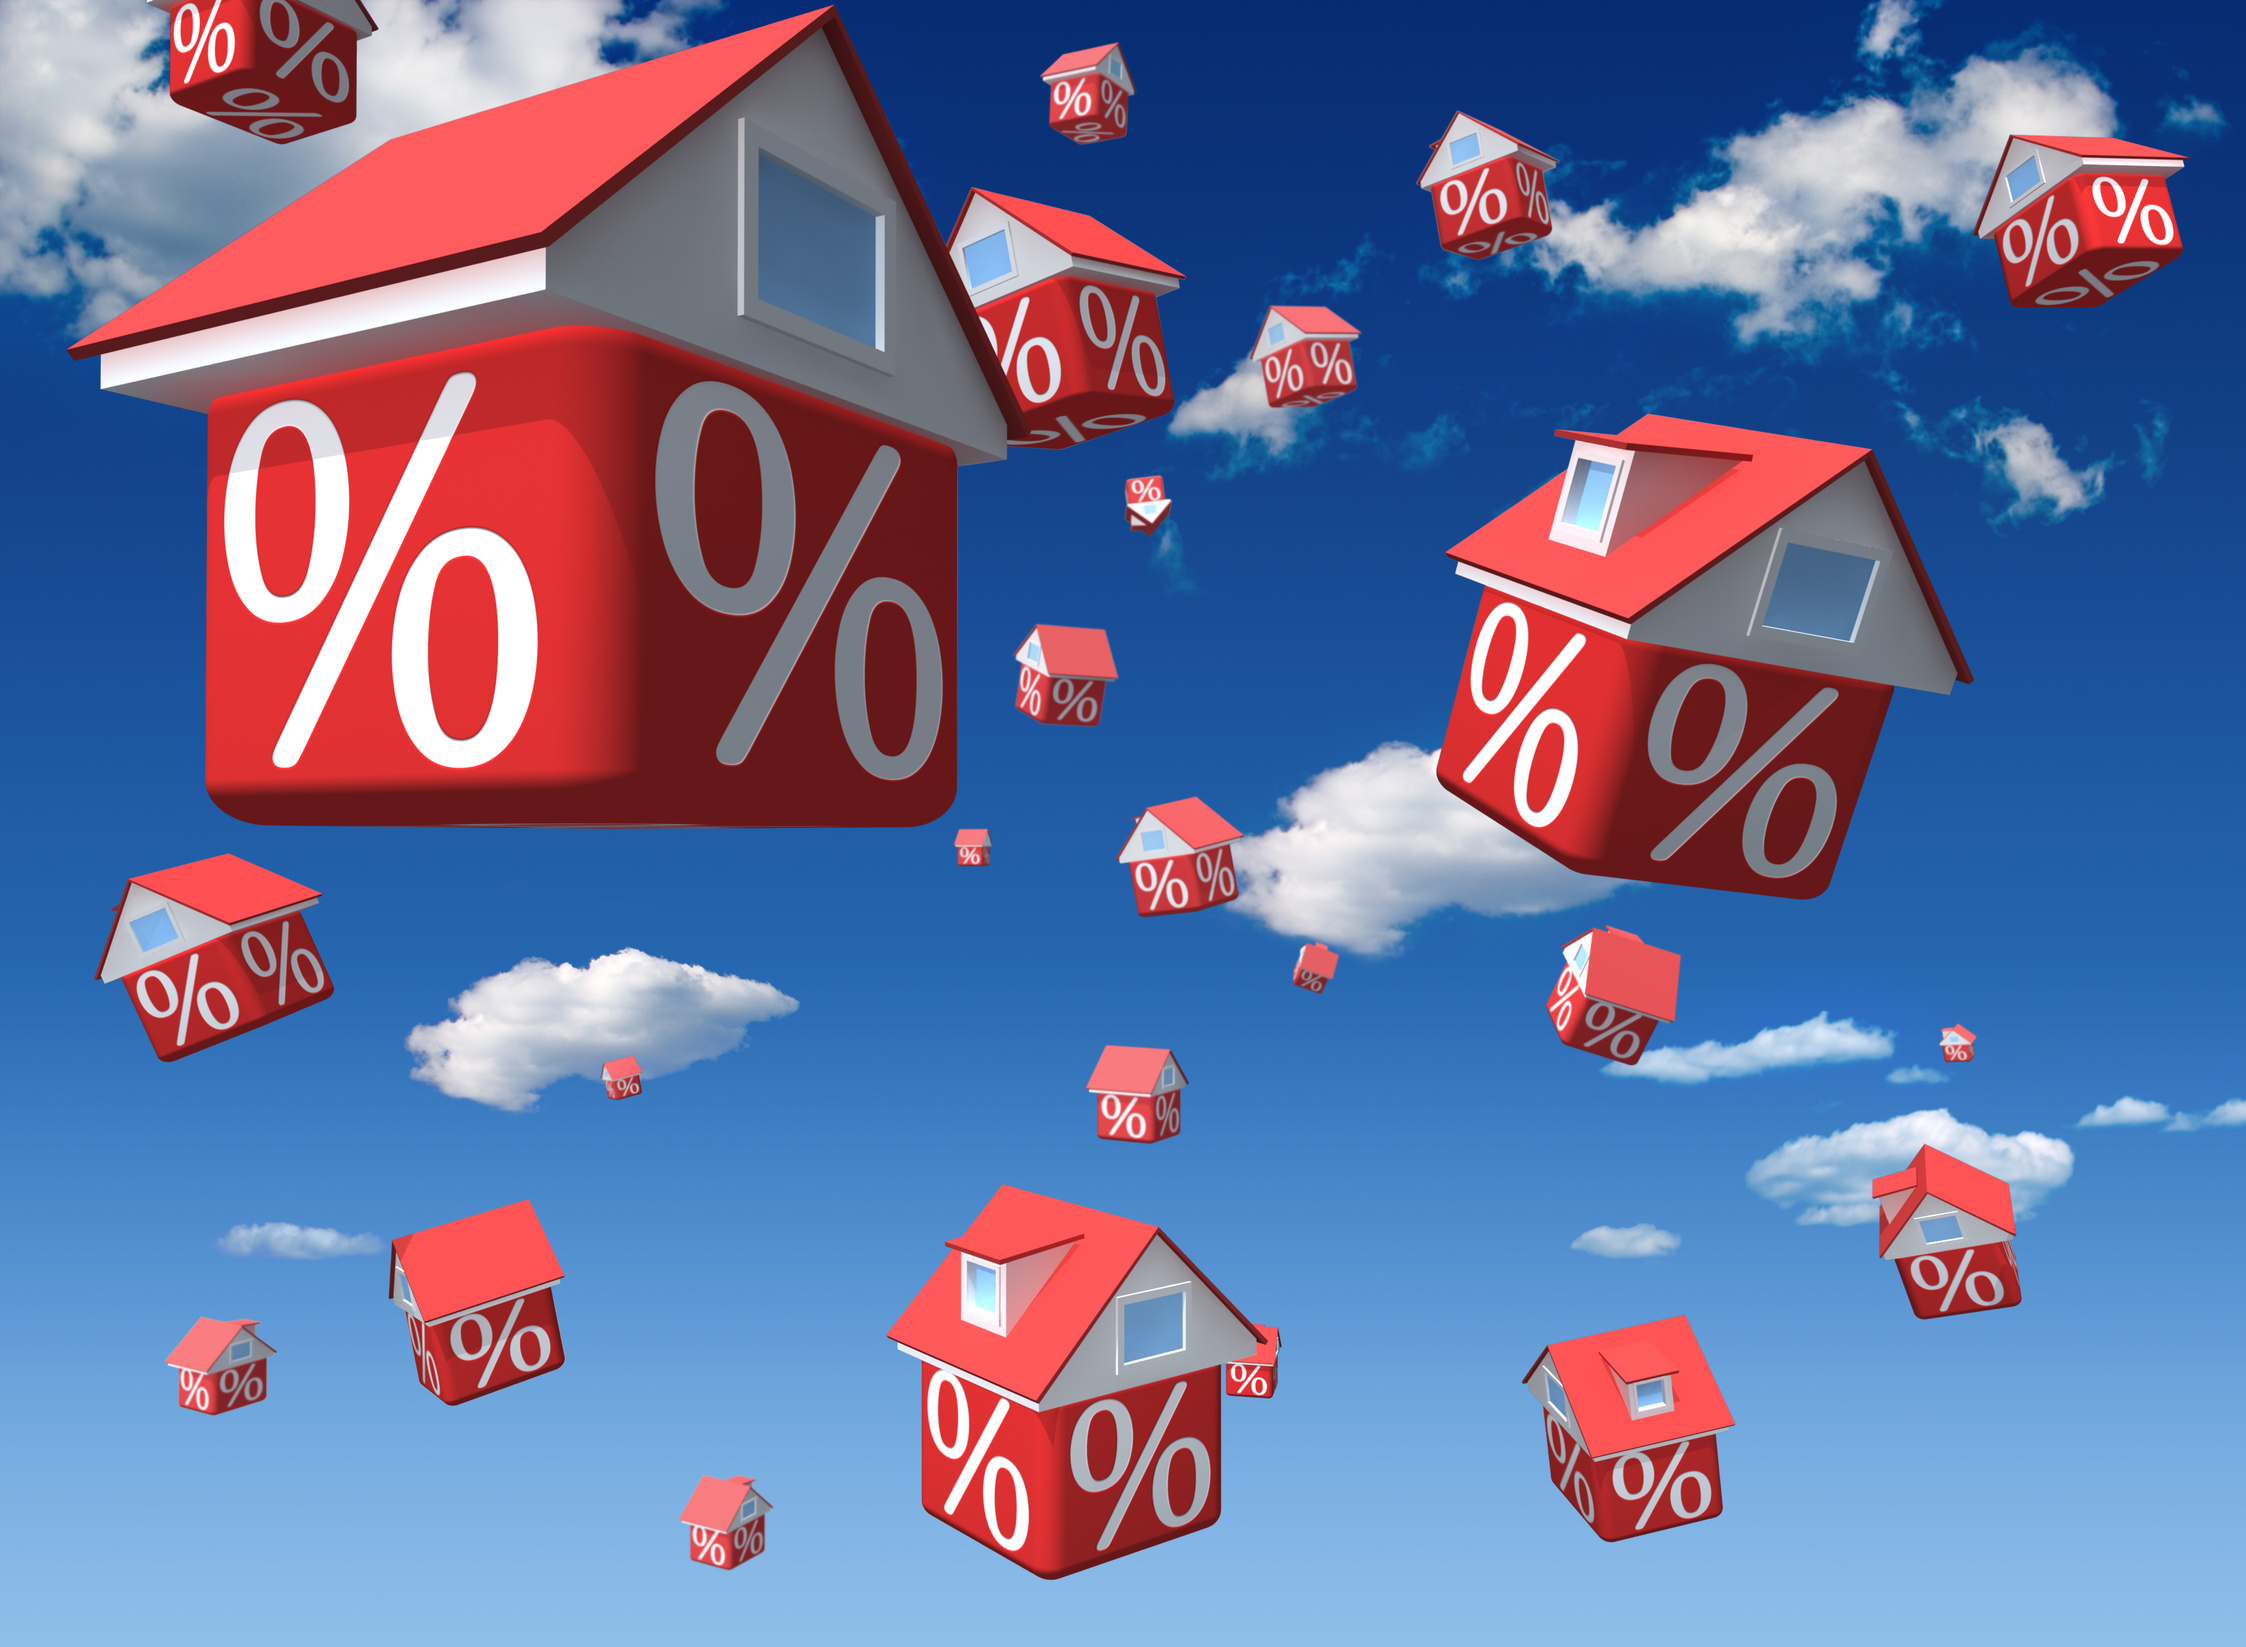 Ипотечное кредитование – вещь хлопотная и доступная далеко не всем